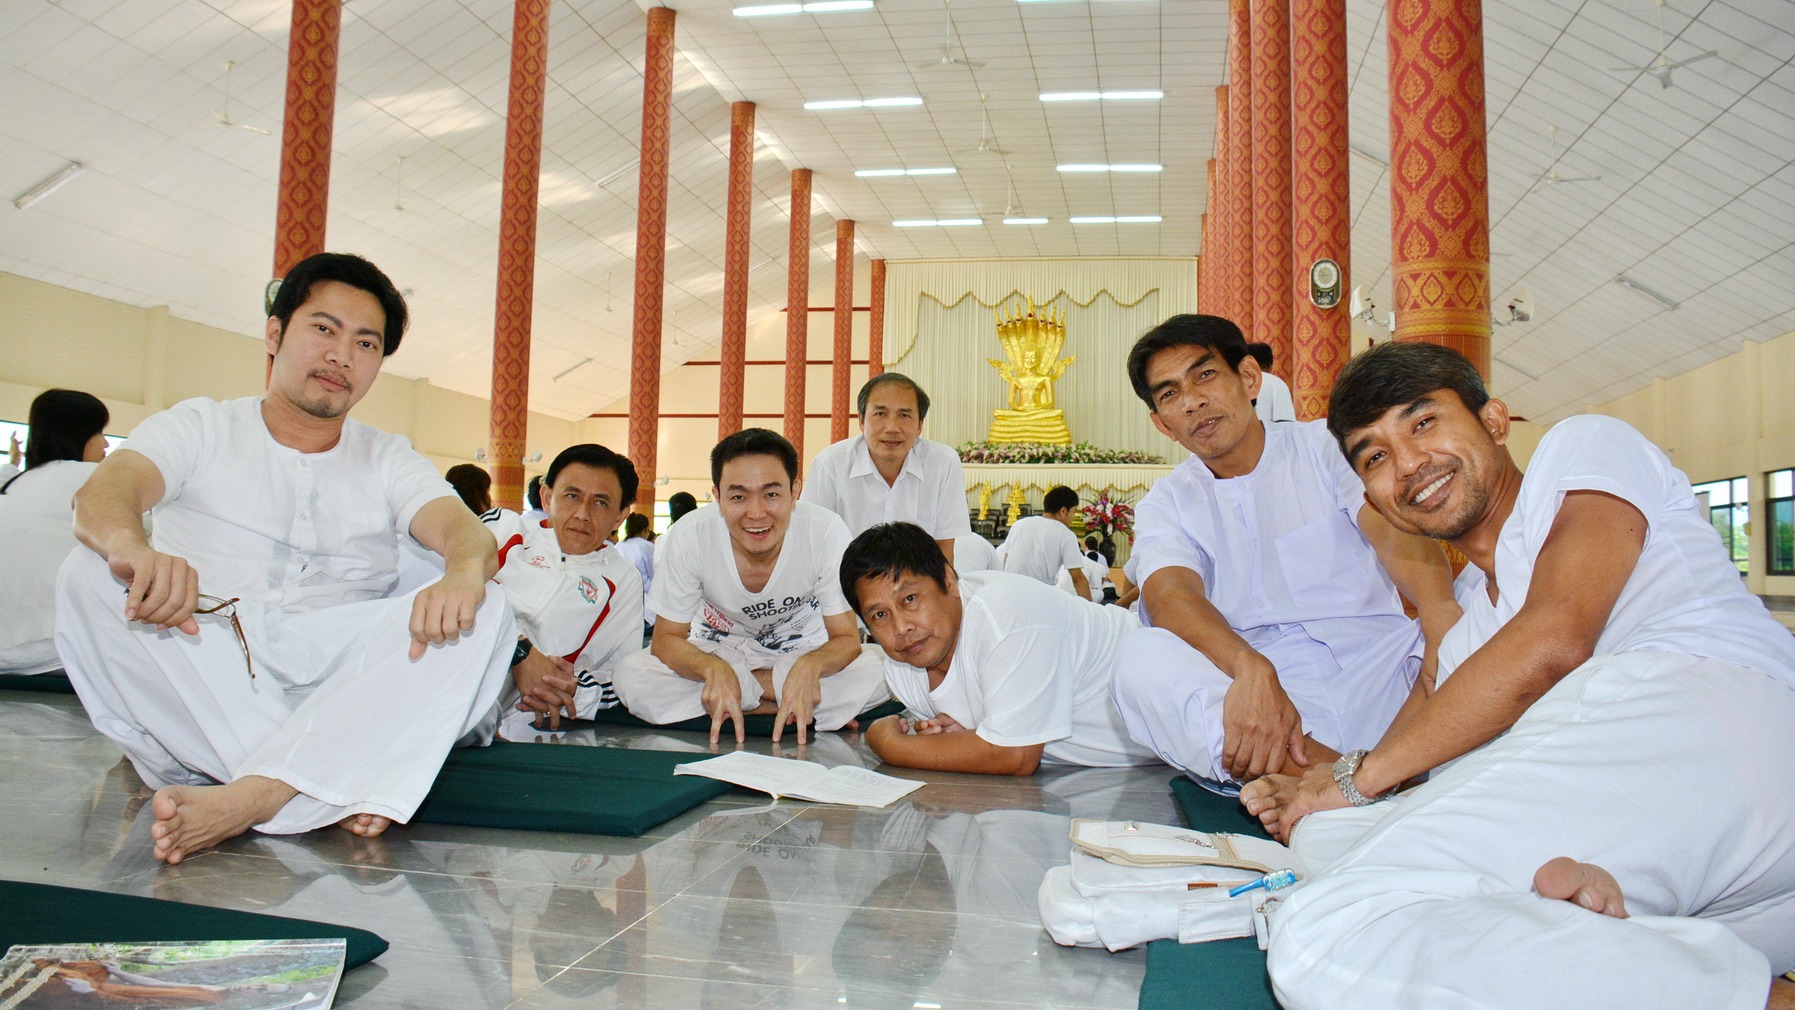 La majeure partie des élèves du Collège catholique de l'Assomption, à Bangkok, sont bouddhistes (Photo:http://www.assumption.ac.th/)